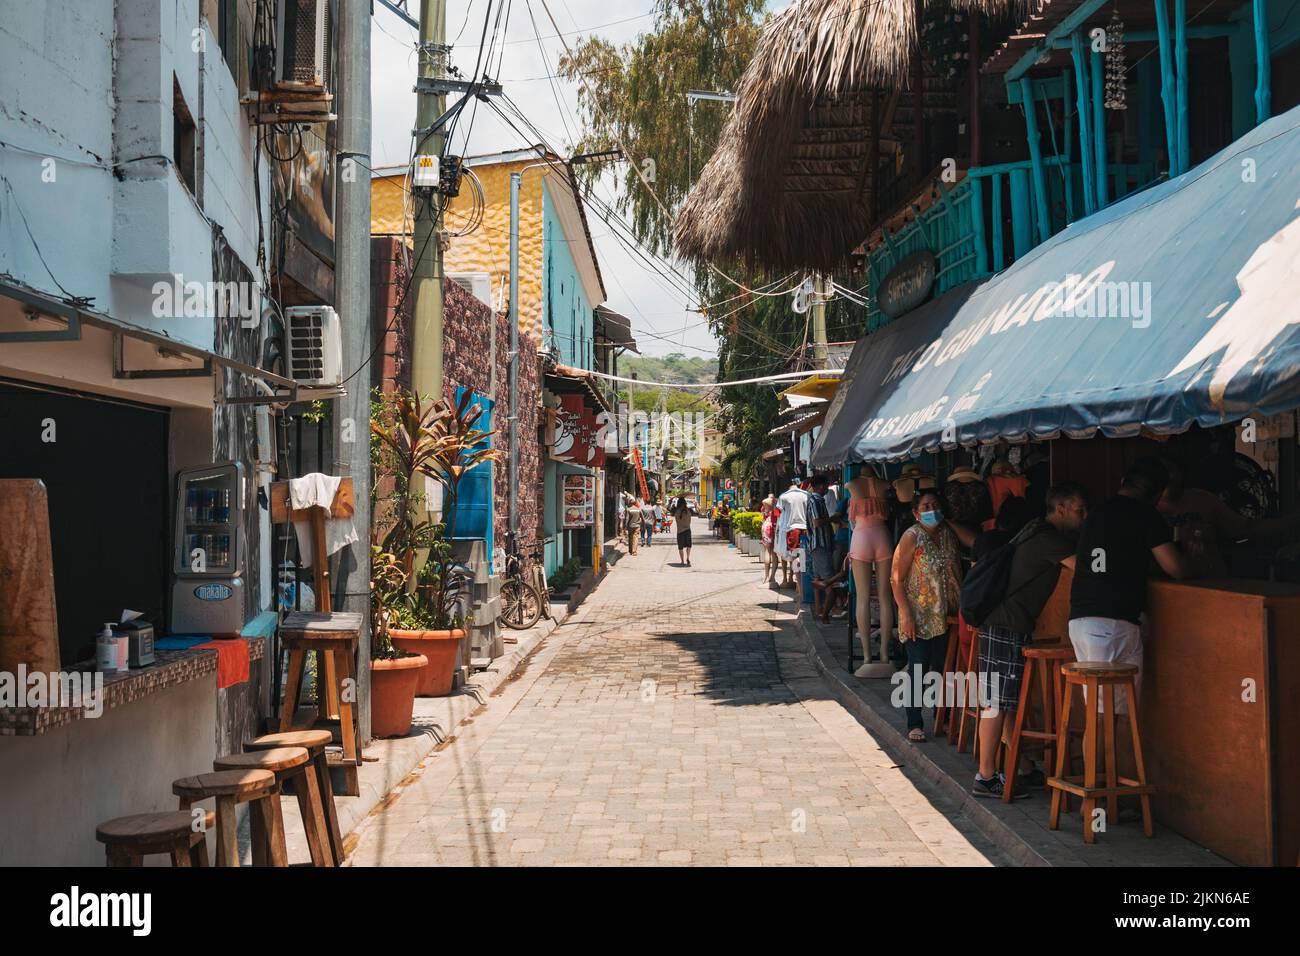 Une rue étroite avec des boutiques, des restaurants et des bars à El Tunco, El Salvador Banque D'Images